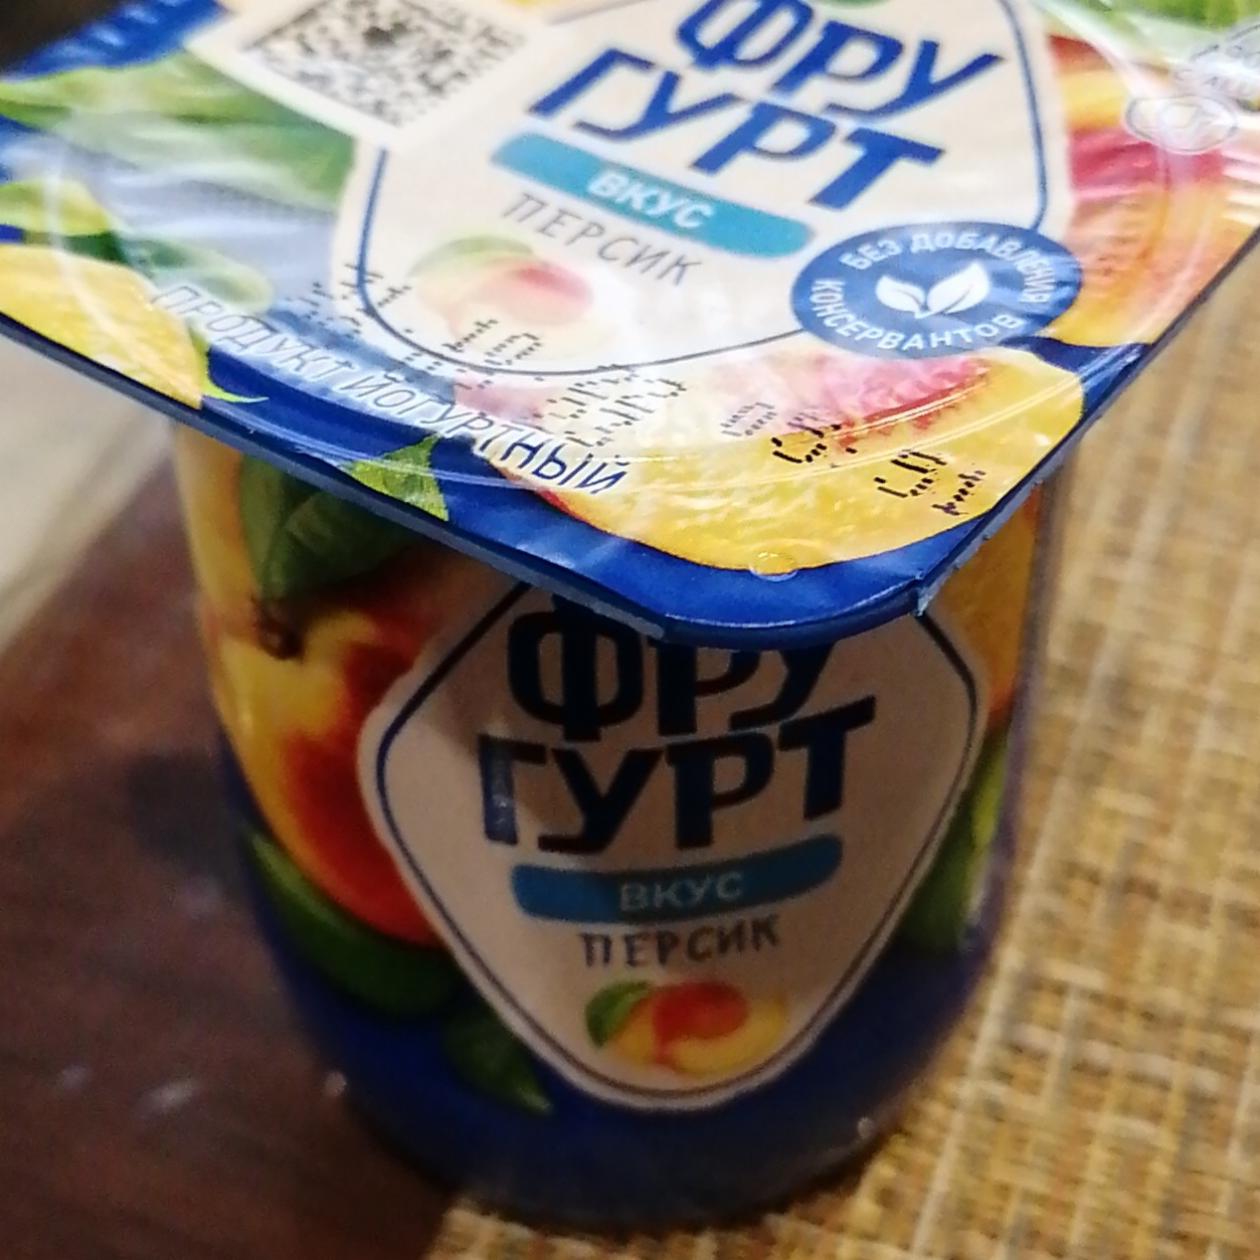 Фото - Продукт йогуртный со вкусом персика Фругурт